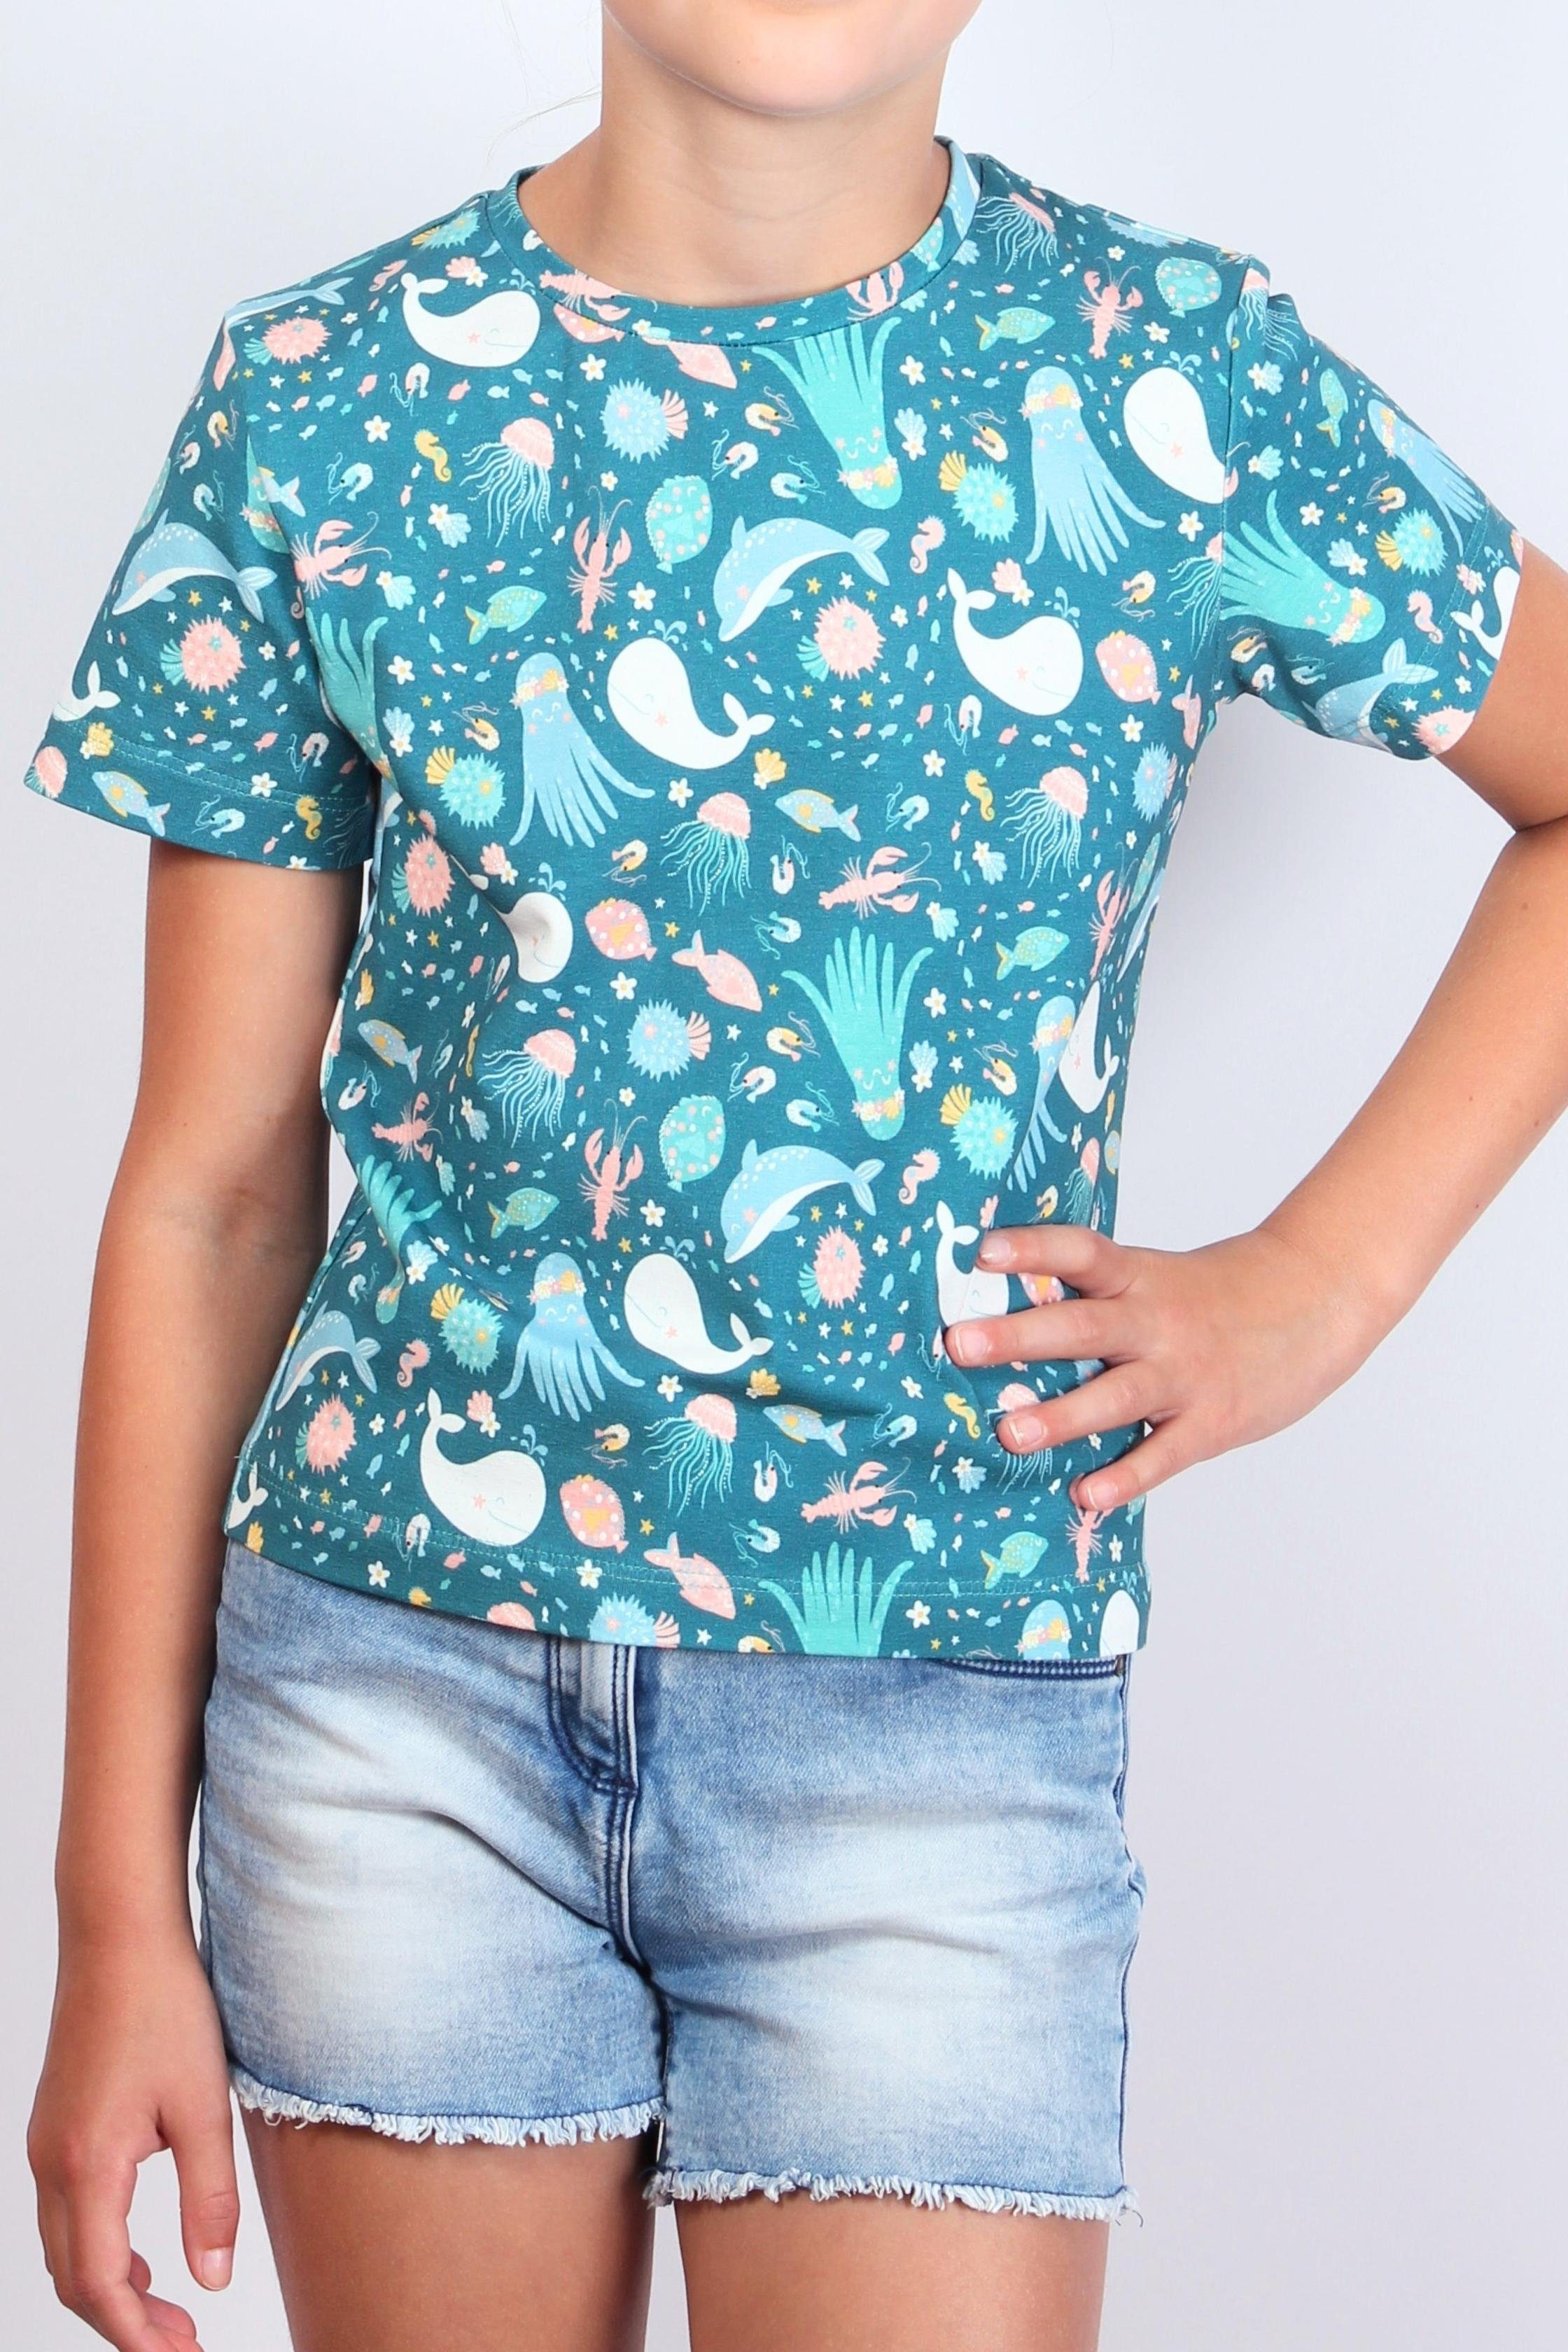 coolismo T-Shirt Print-Shirt für Mädchen europäische Meereswelt" Alloverprint, "Kleine Produktion Baumwolle